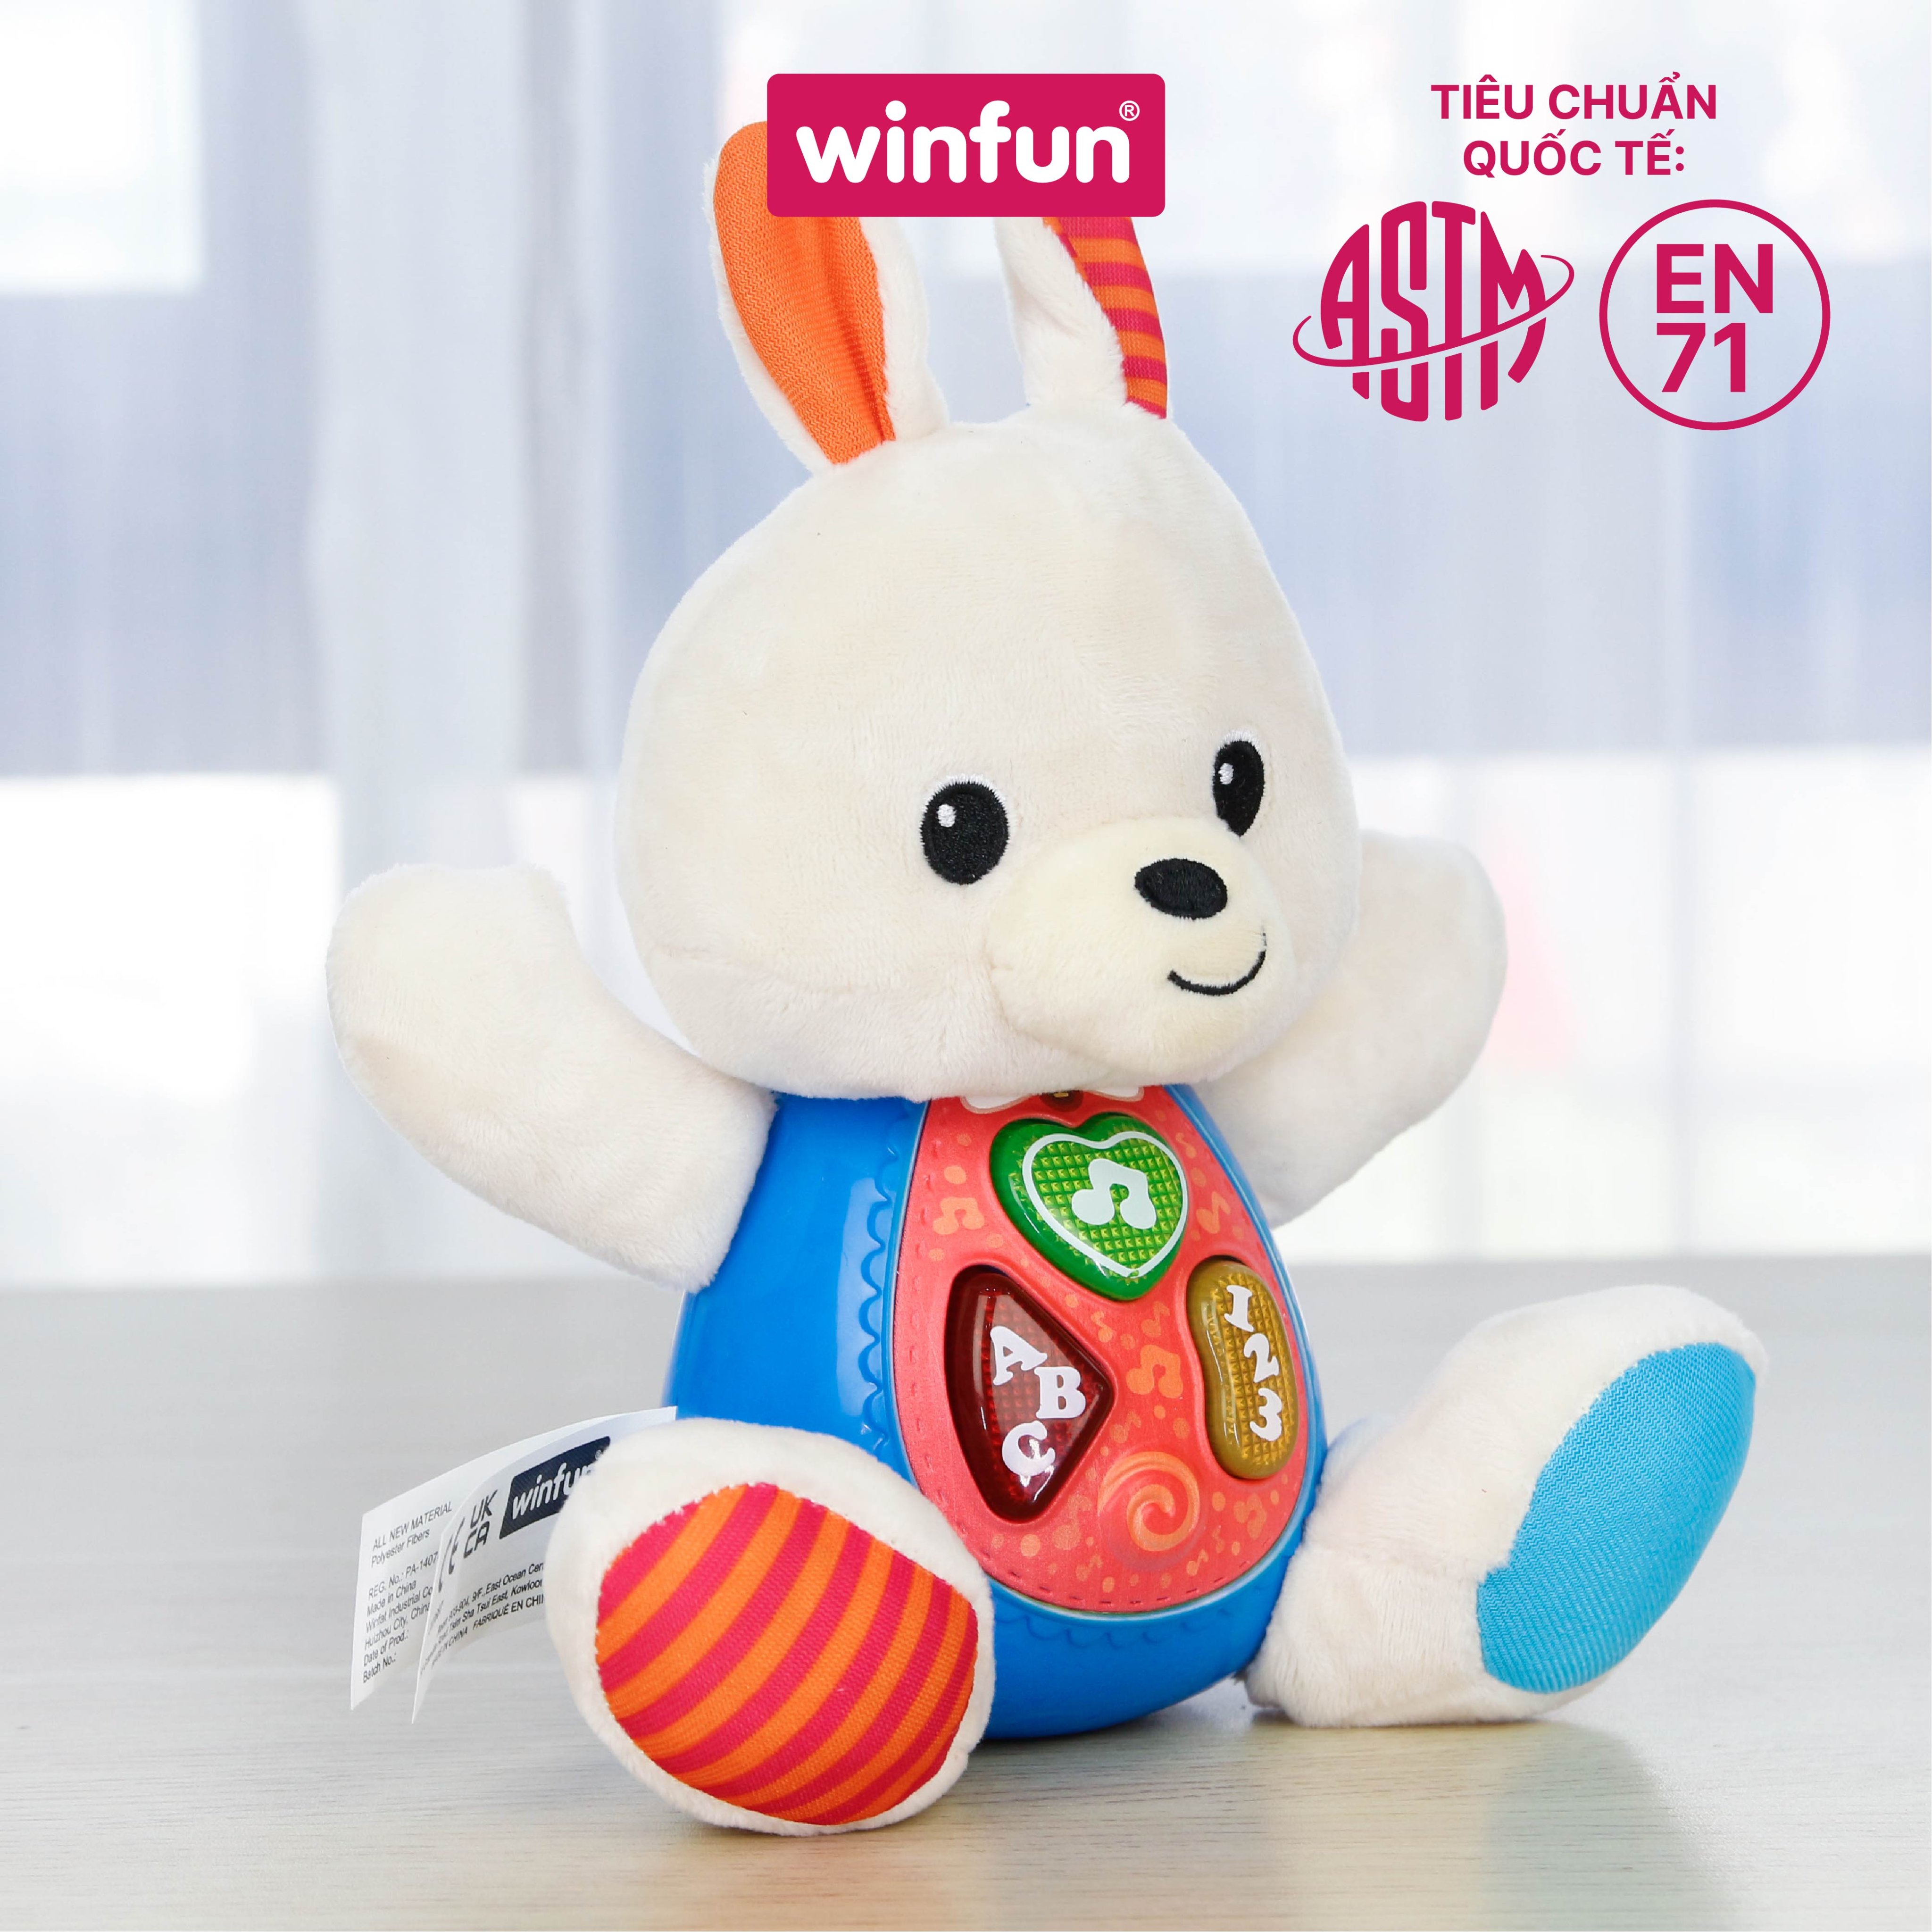 Đồ chơi cho bé hình chú thỏ LiLi phát nhạc vui nhộn - biết đọc chữ tiếng anh giáo dục sớm cho trẻ 0-36 tháng Winfun 0687-01